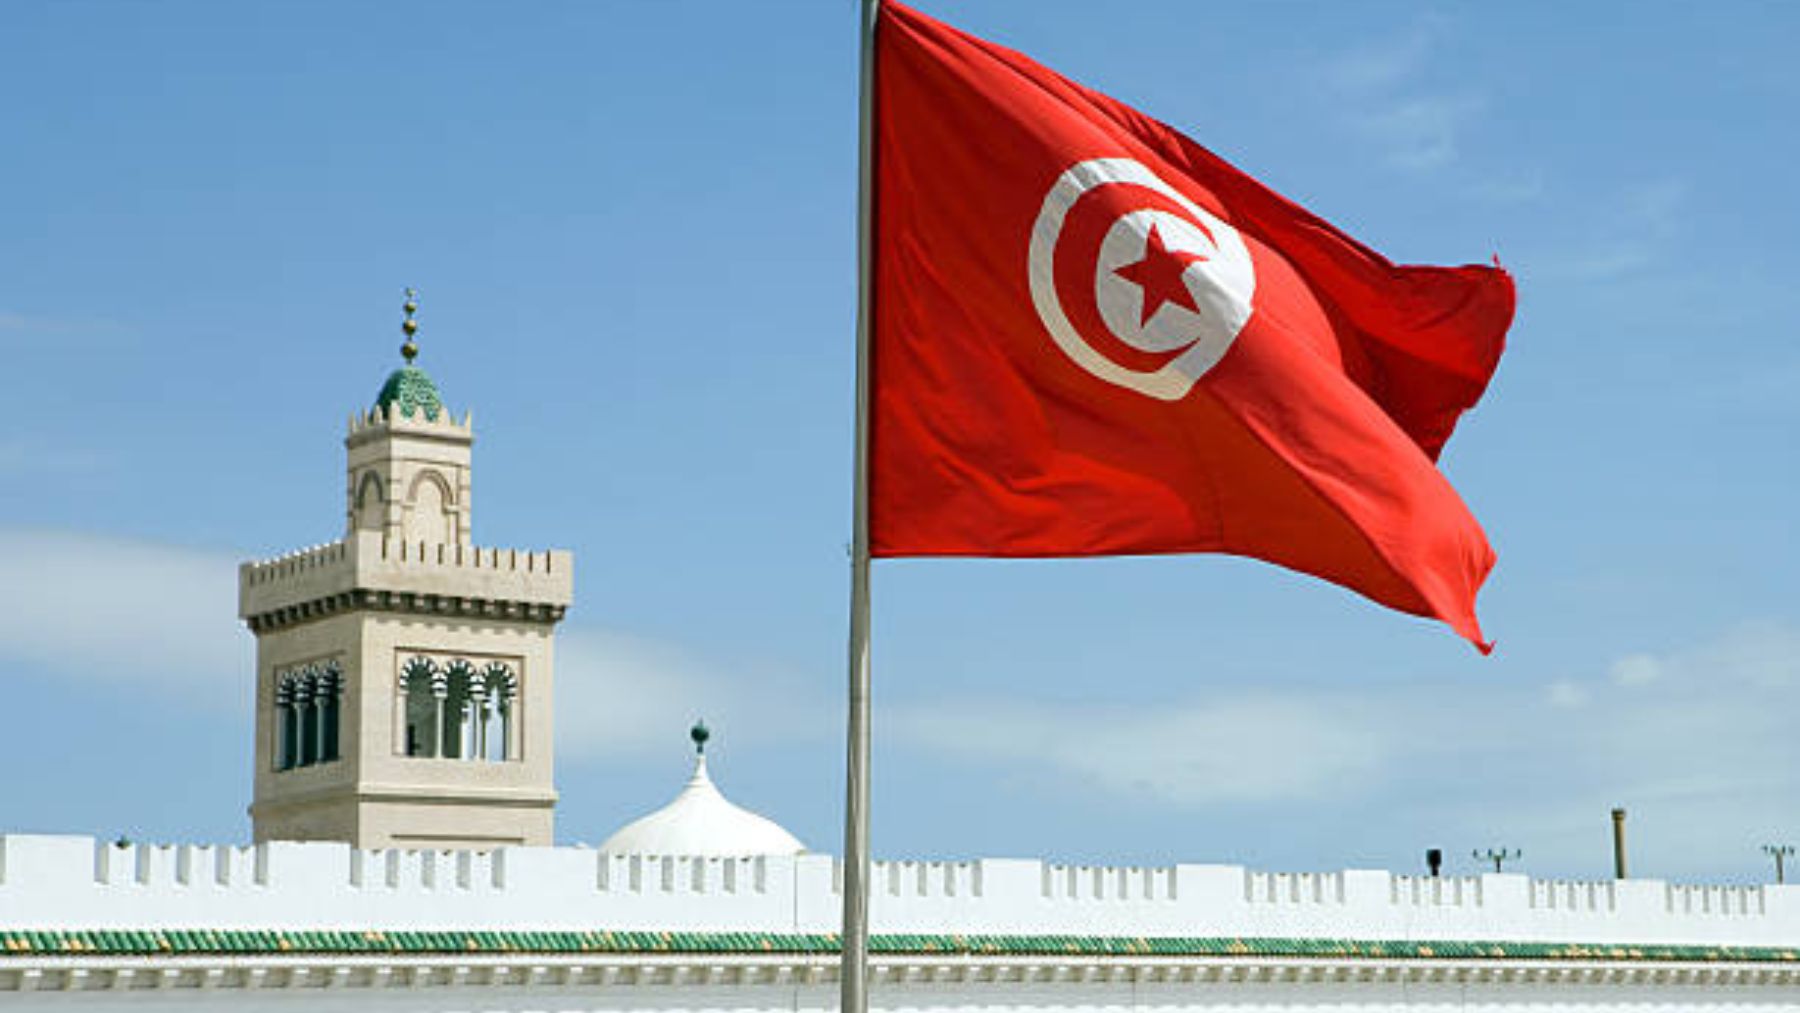 Descubre todo sobre el himno de Túnez